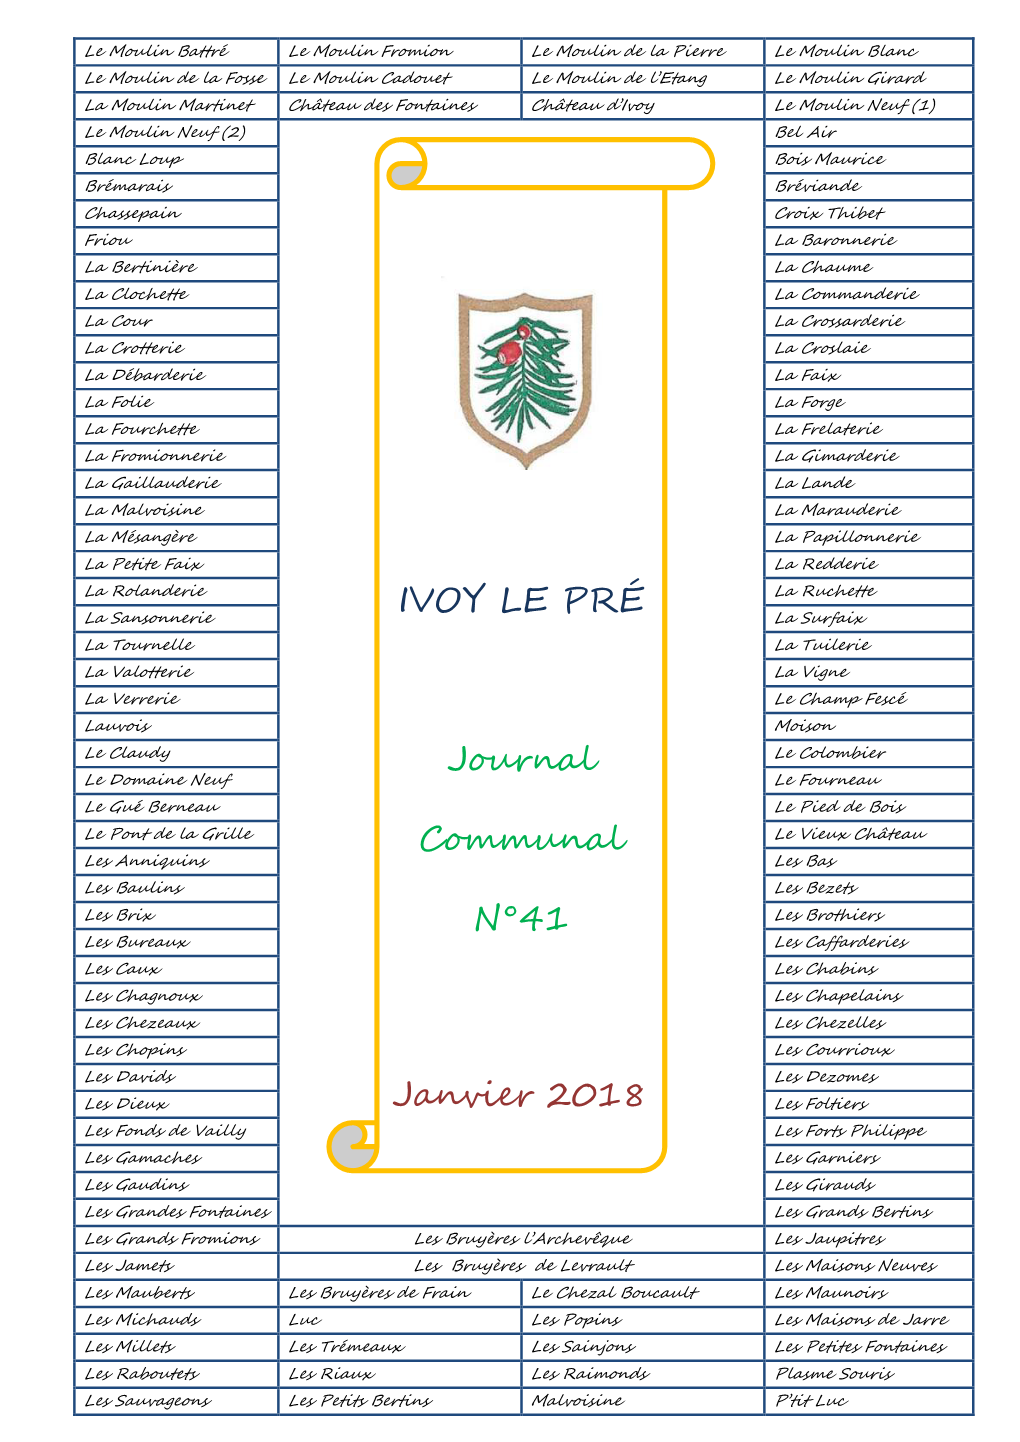 IVOY LE PRÉ Journal Communal N°41 Janvier 2018